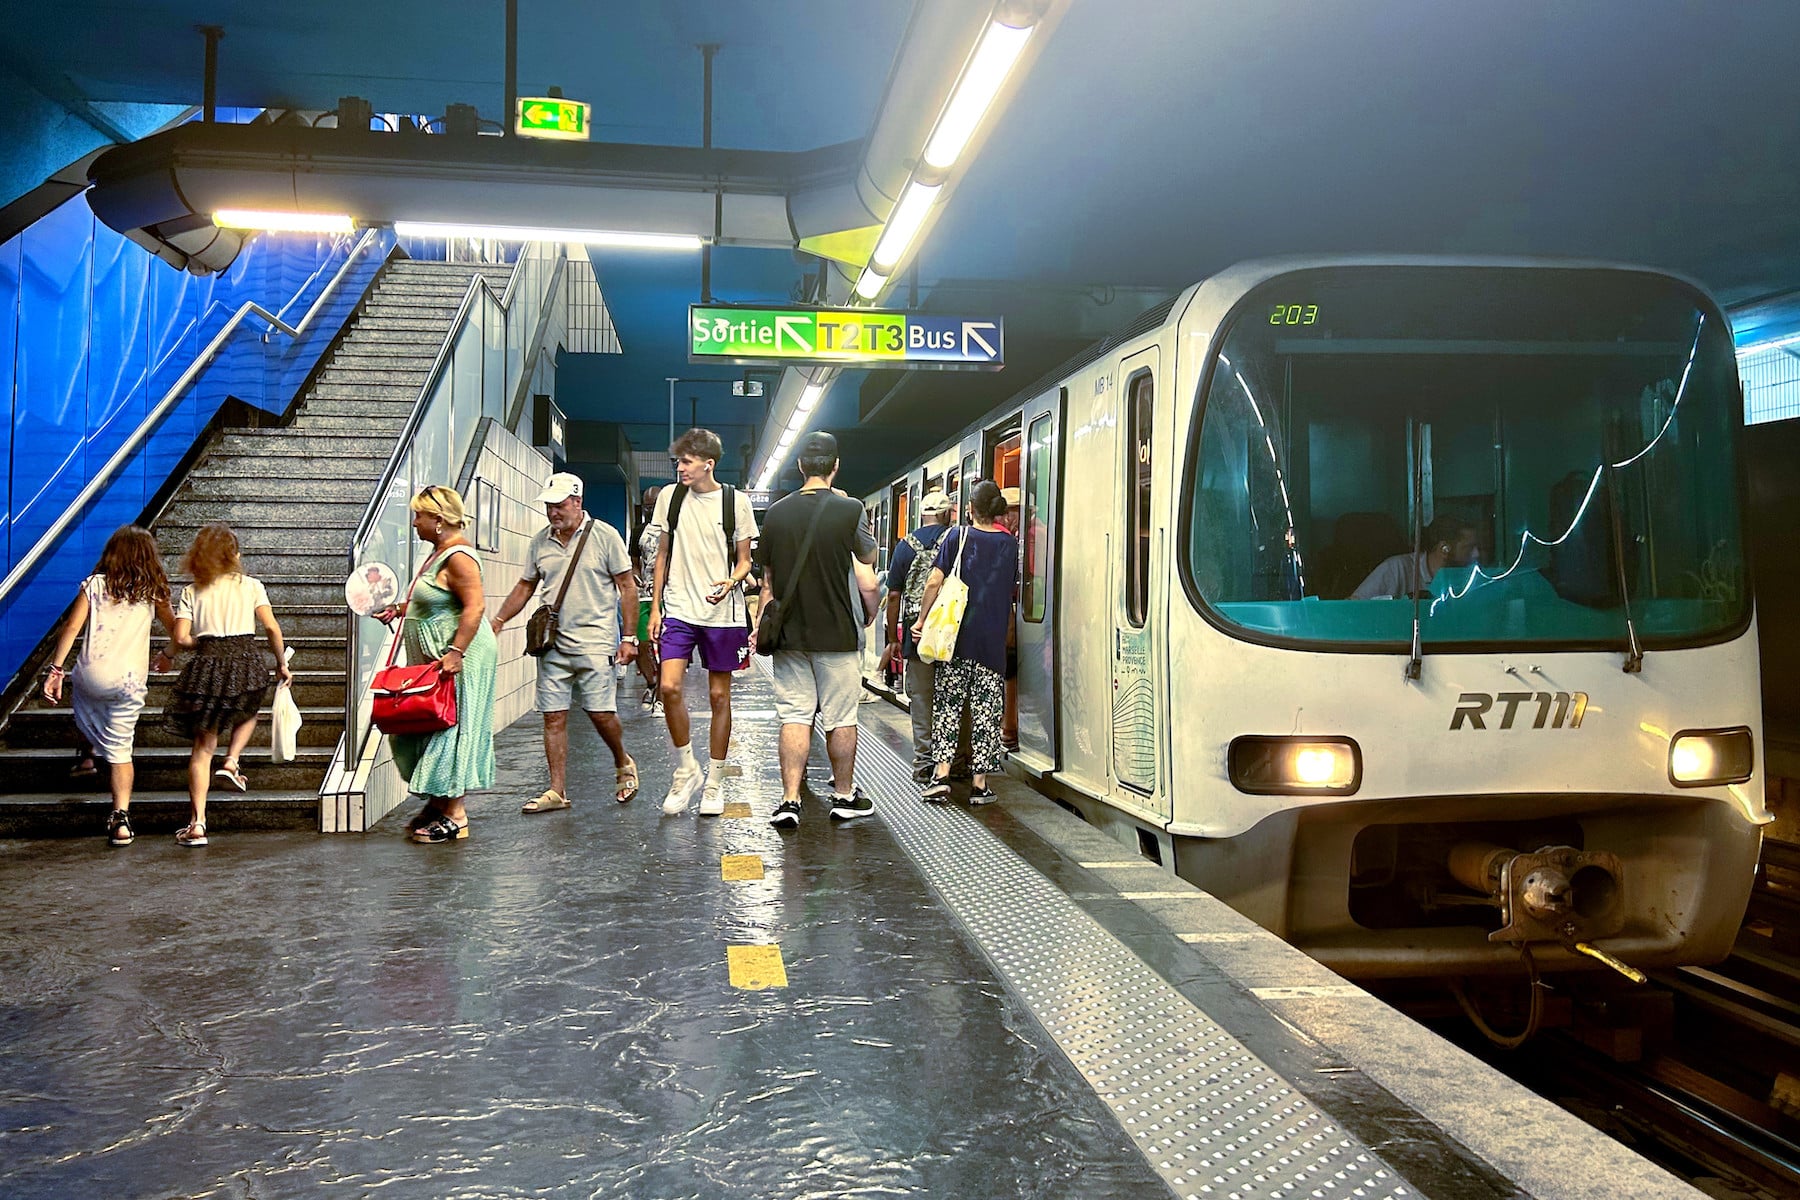 métro provençal, Les annonces des stations du métro marseillais bientôt prononcées en provençal, Made in Marseille